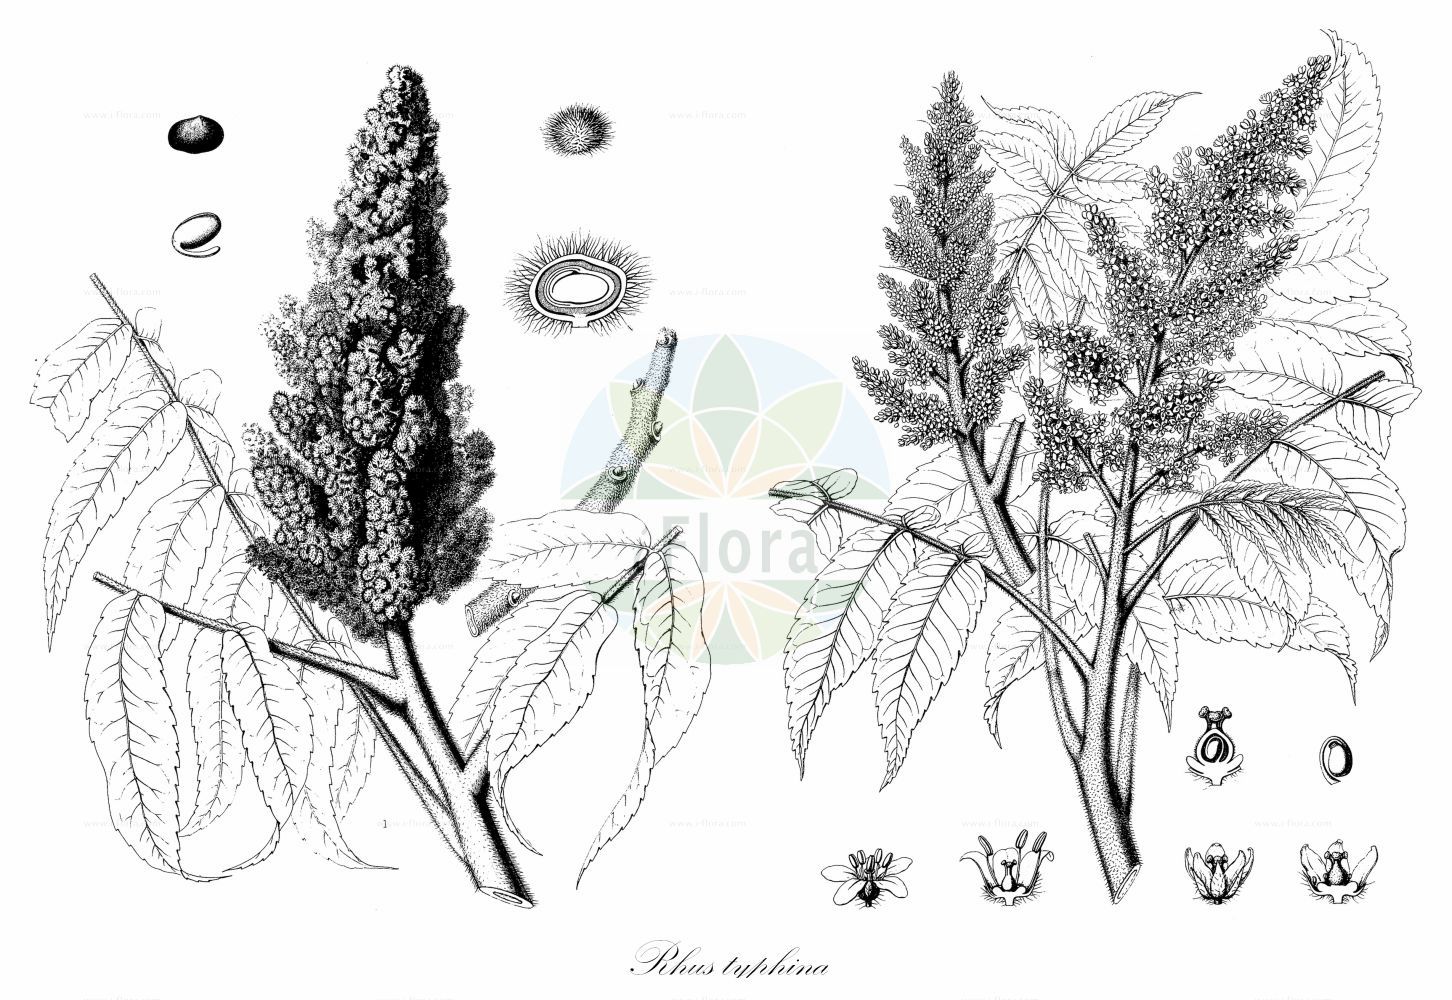 Historische Abbildung von Rhus typhina (Essigbaum - Stag's-horn Sumach). Das Bild zeigt Blatt, Bluete, Frucht und Same. ---- Historical Drawing of Rhus typhina (Essigbaum - Stag's-horn Sumach). The image is showing leaf, flower, fruit and seed.(Rhus typhina,Essigbaum,Stag's-horn Sumach,Rhus hirta,Rhus typhina,Essigbaum,Hirschkolben-Sumach,Stag's-horn Sumach,Hairy Sumac,Hairy Sumach,Staghorn Sumac,Staghorn Sumach,Vinegar Plant,Vinegar Tree,Virginia Sumac,Virginia Sumach,Rhus,Sumach,Sumac,Anacardiaceae,Kaschugewächse,Cashew family,Blatt,Bluete,Frucht,Same,leaf,flower,fruit,seed,Sargent (1891-1902))